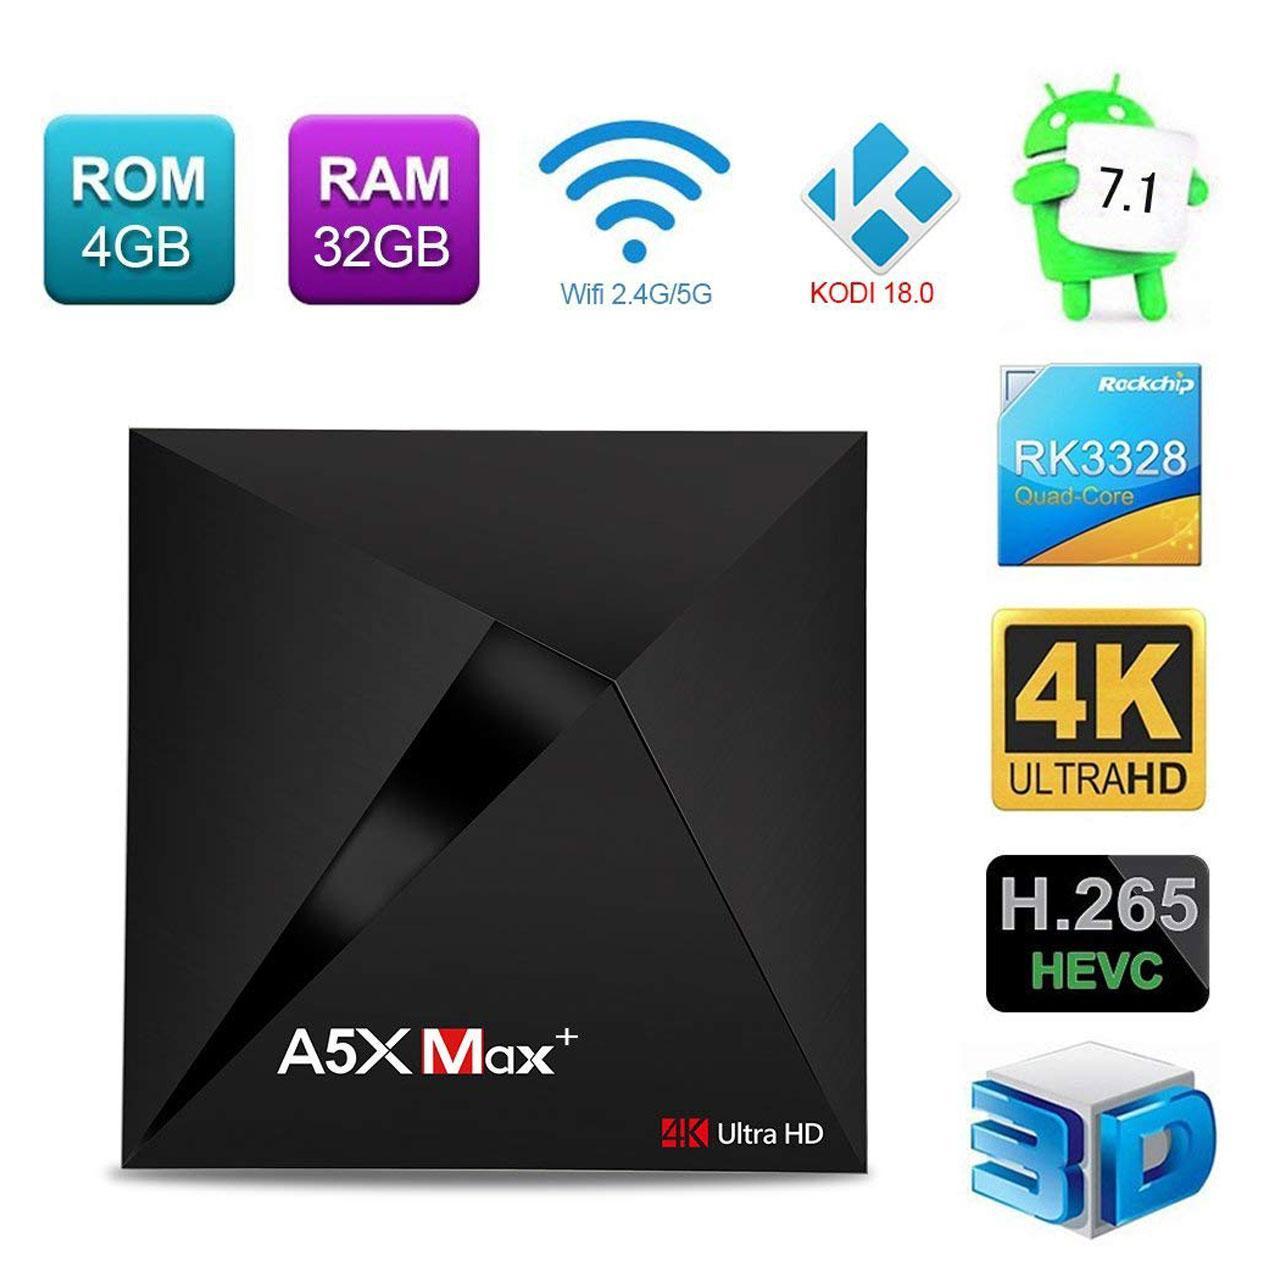 مینی کامپیوتر اندروید A5X Max Plus tv box تی وی باکس اندروید